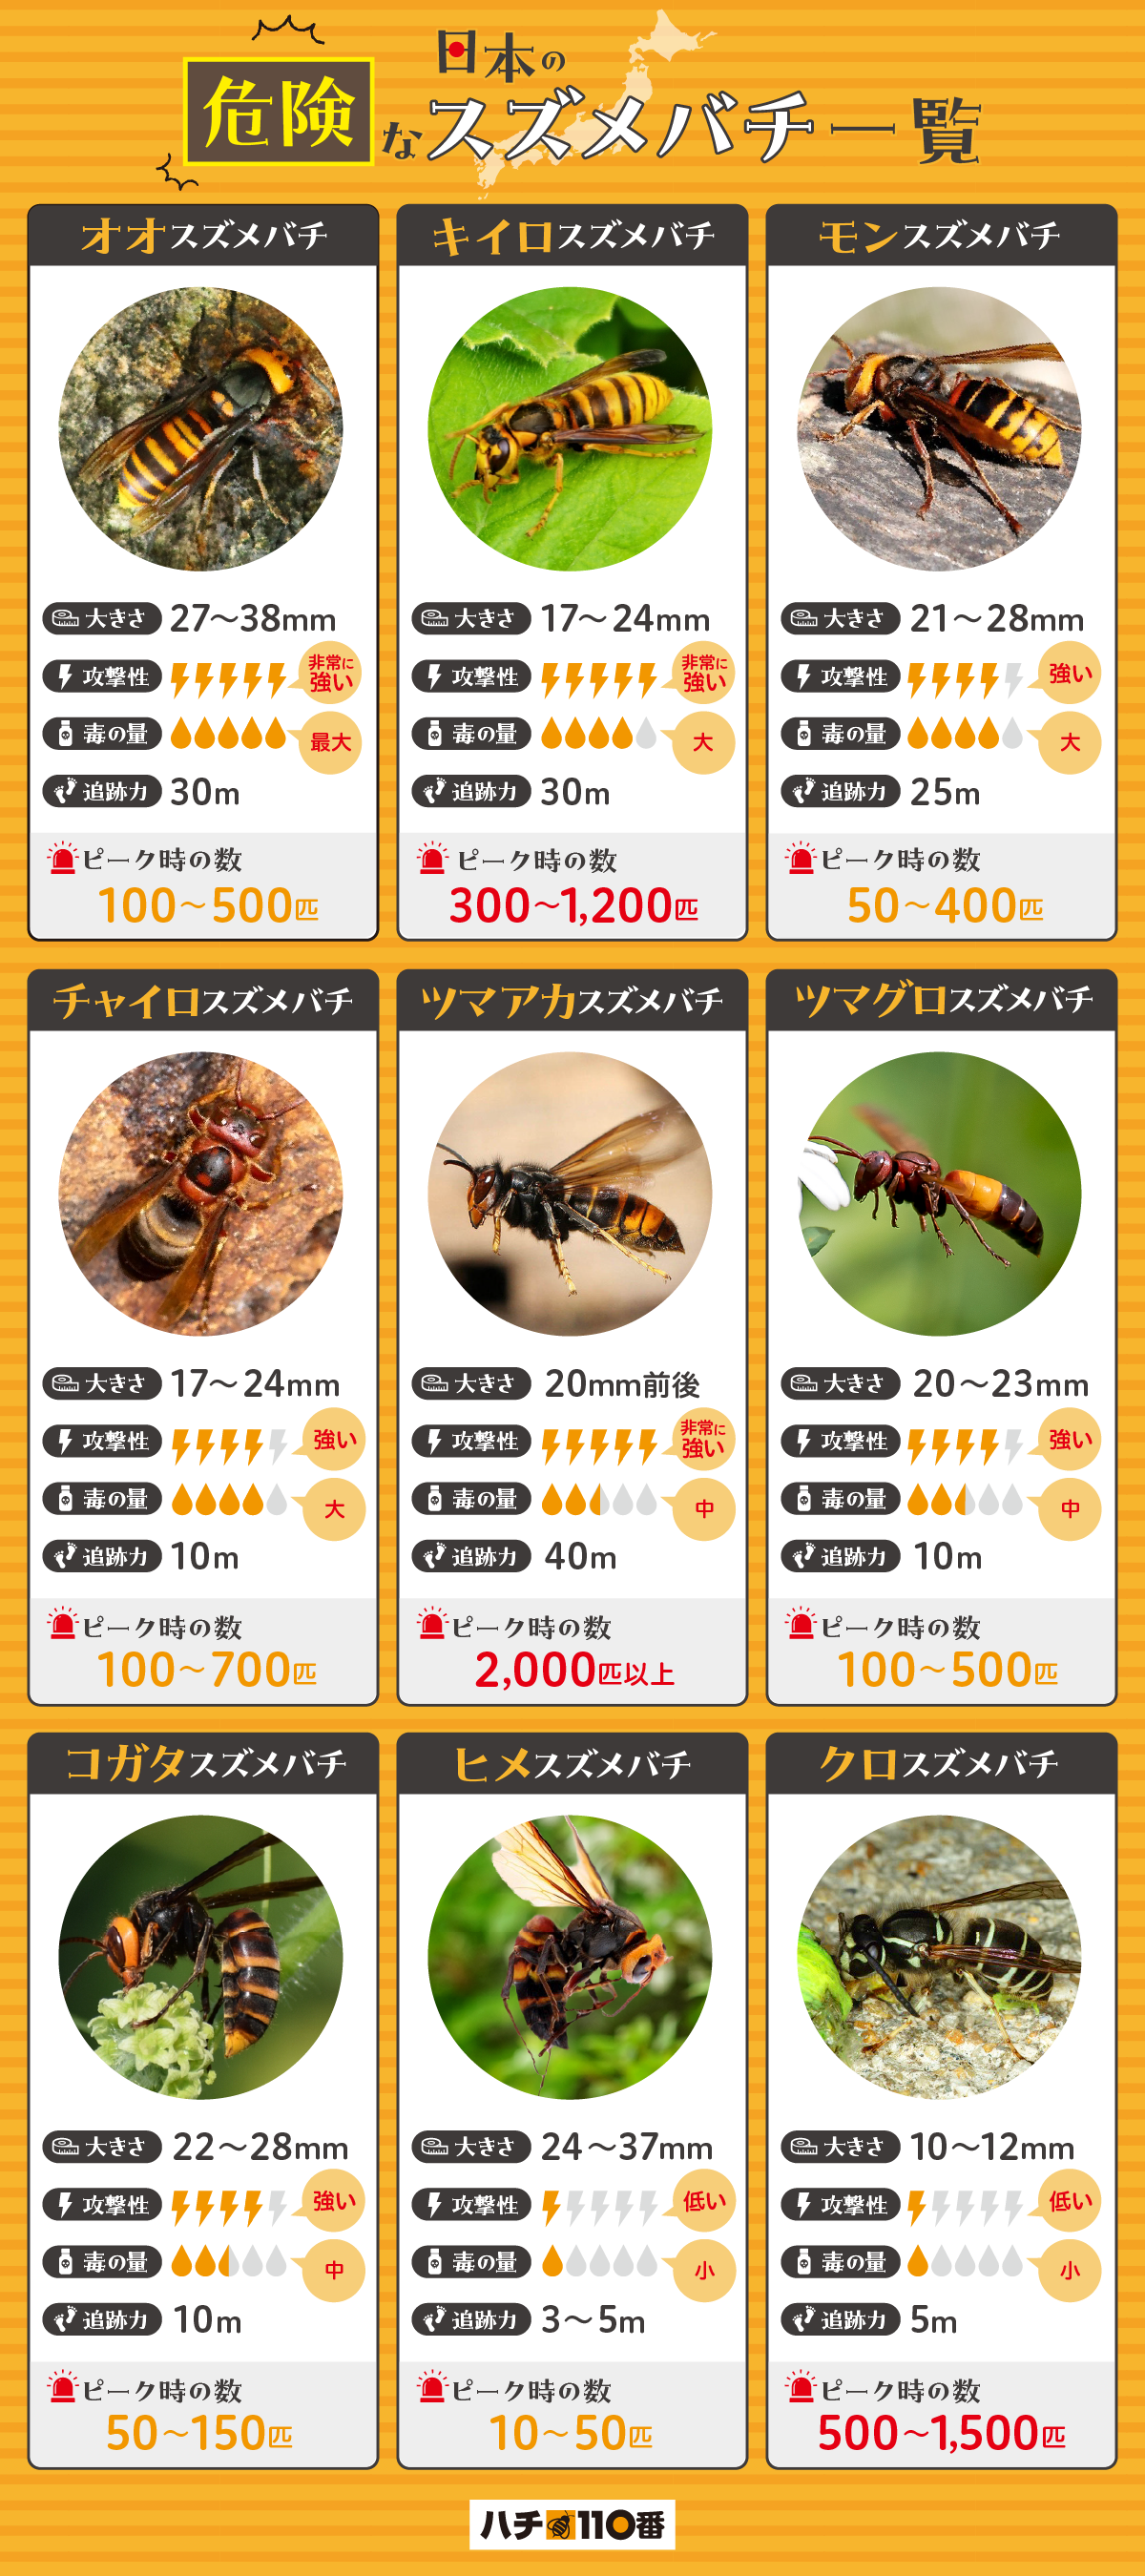 日本の危険なスズメバチ一覧